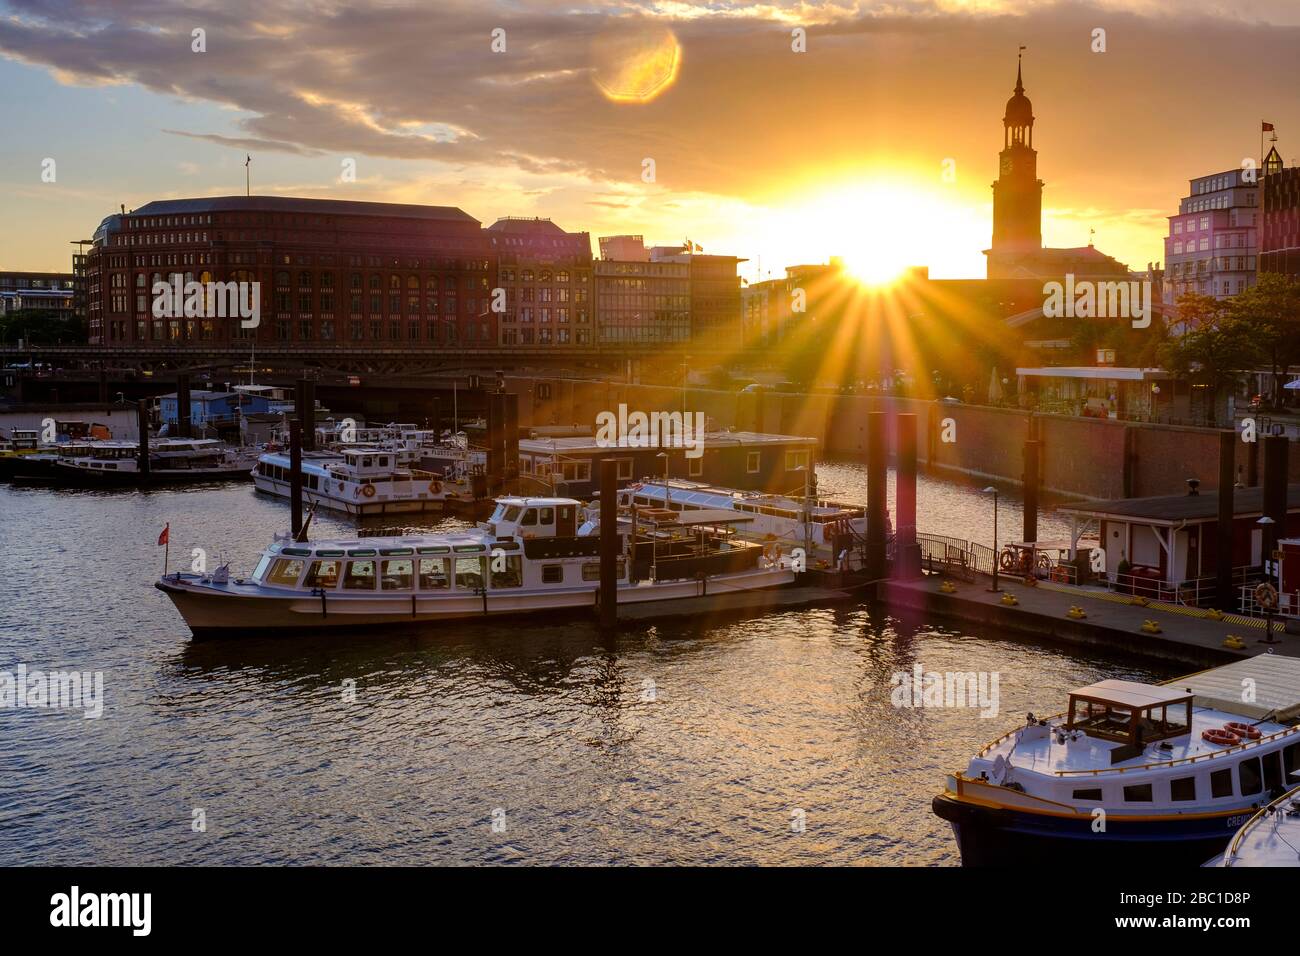 Abendlicht am Binnenhafen mit Hamburger Michel, St. Michaelis, Hafencity, Hafenstadt, Hamburg, Deutschland Foto Stock